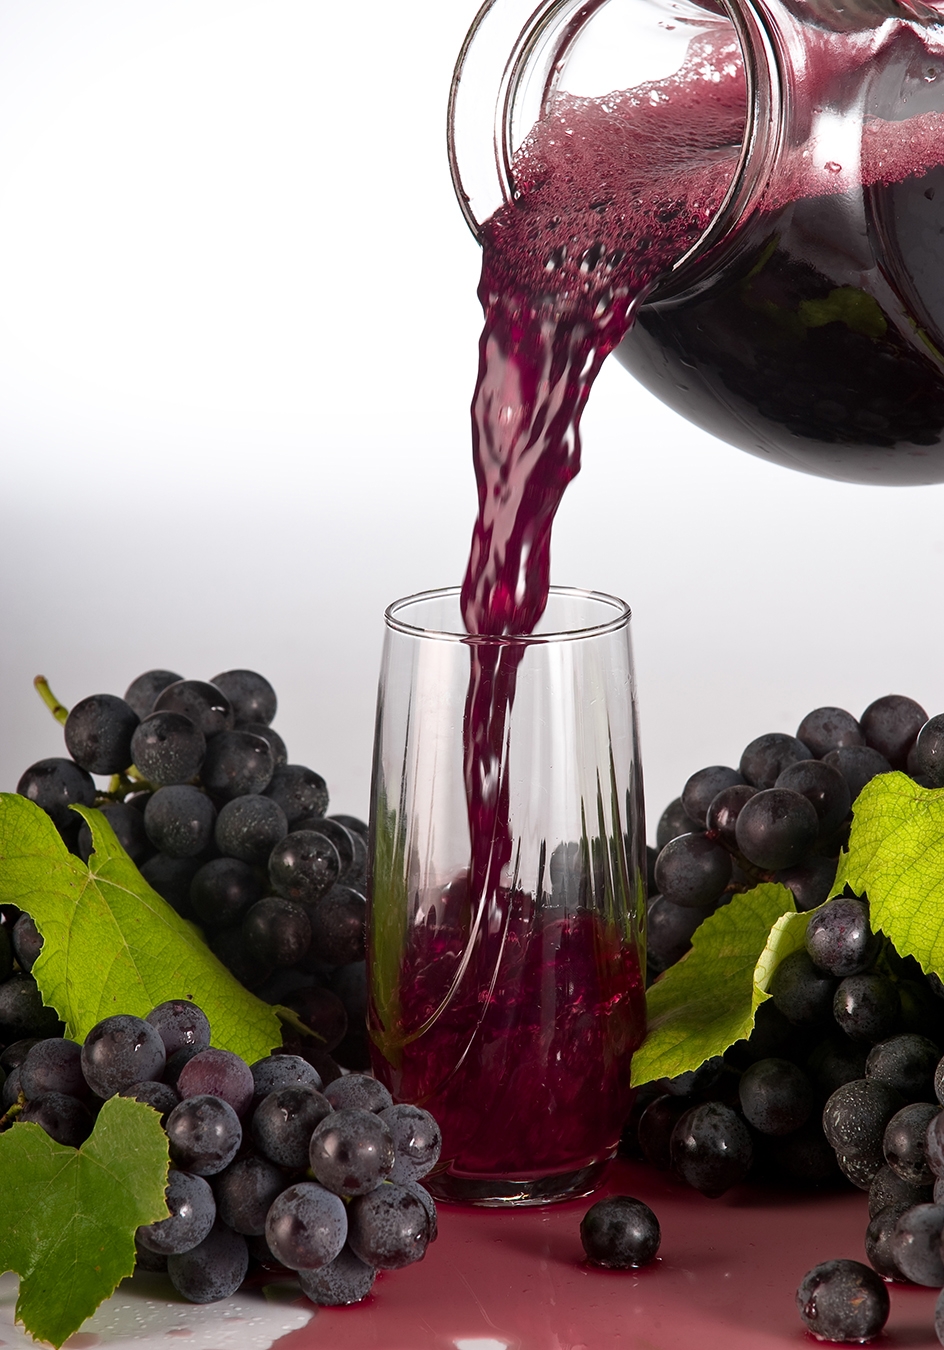 Saiba mais sobre os benefícios do suco de uva. - Divulgação